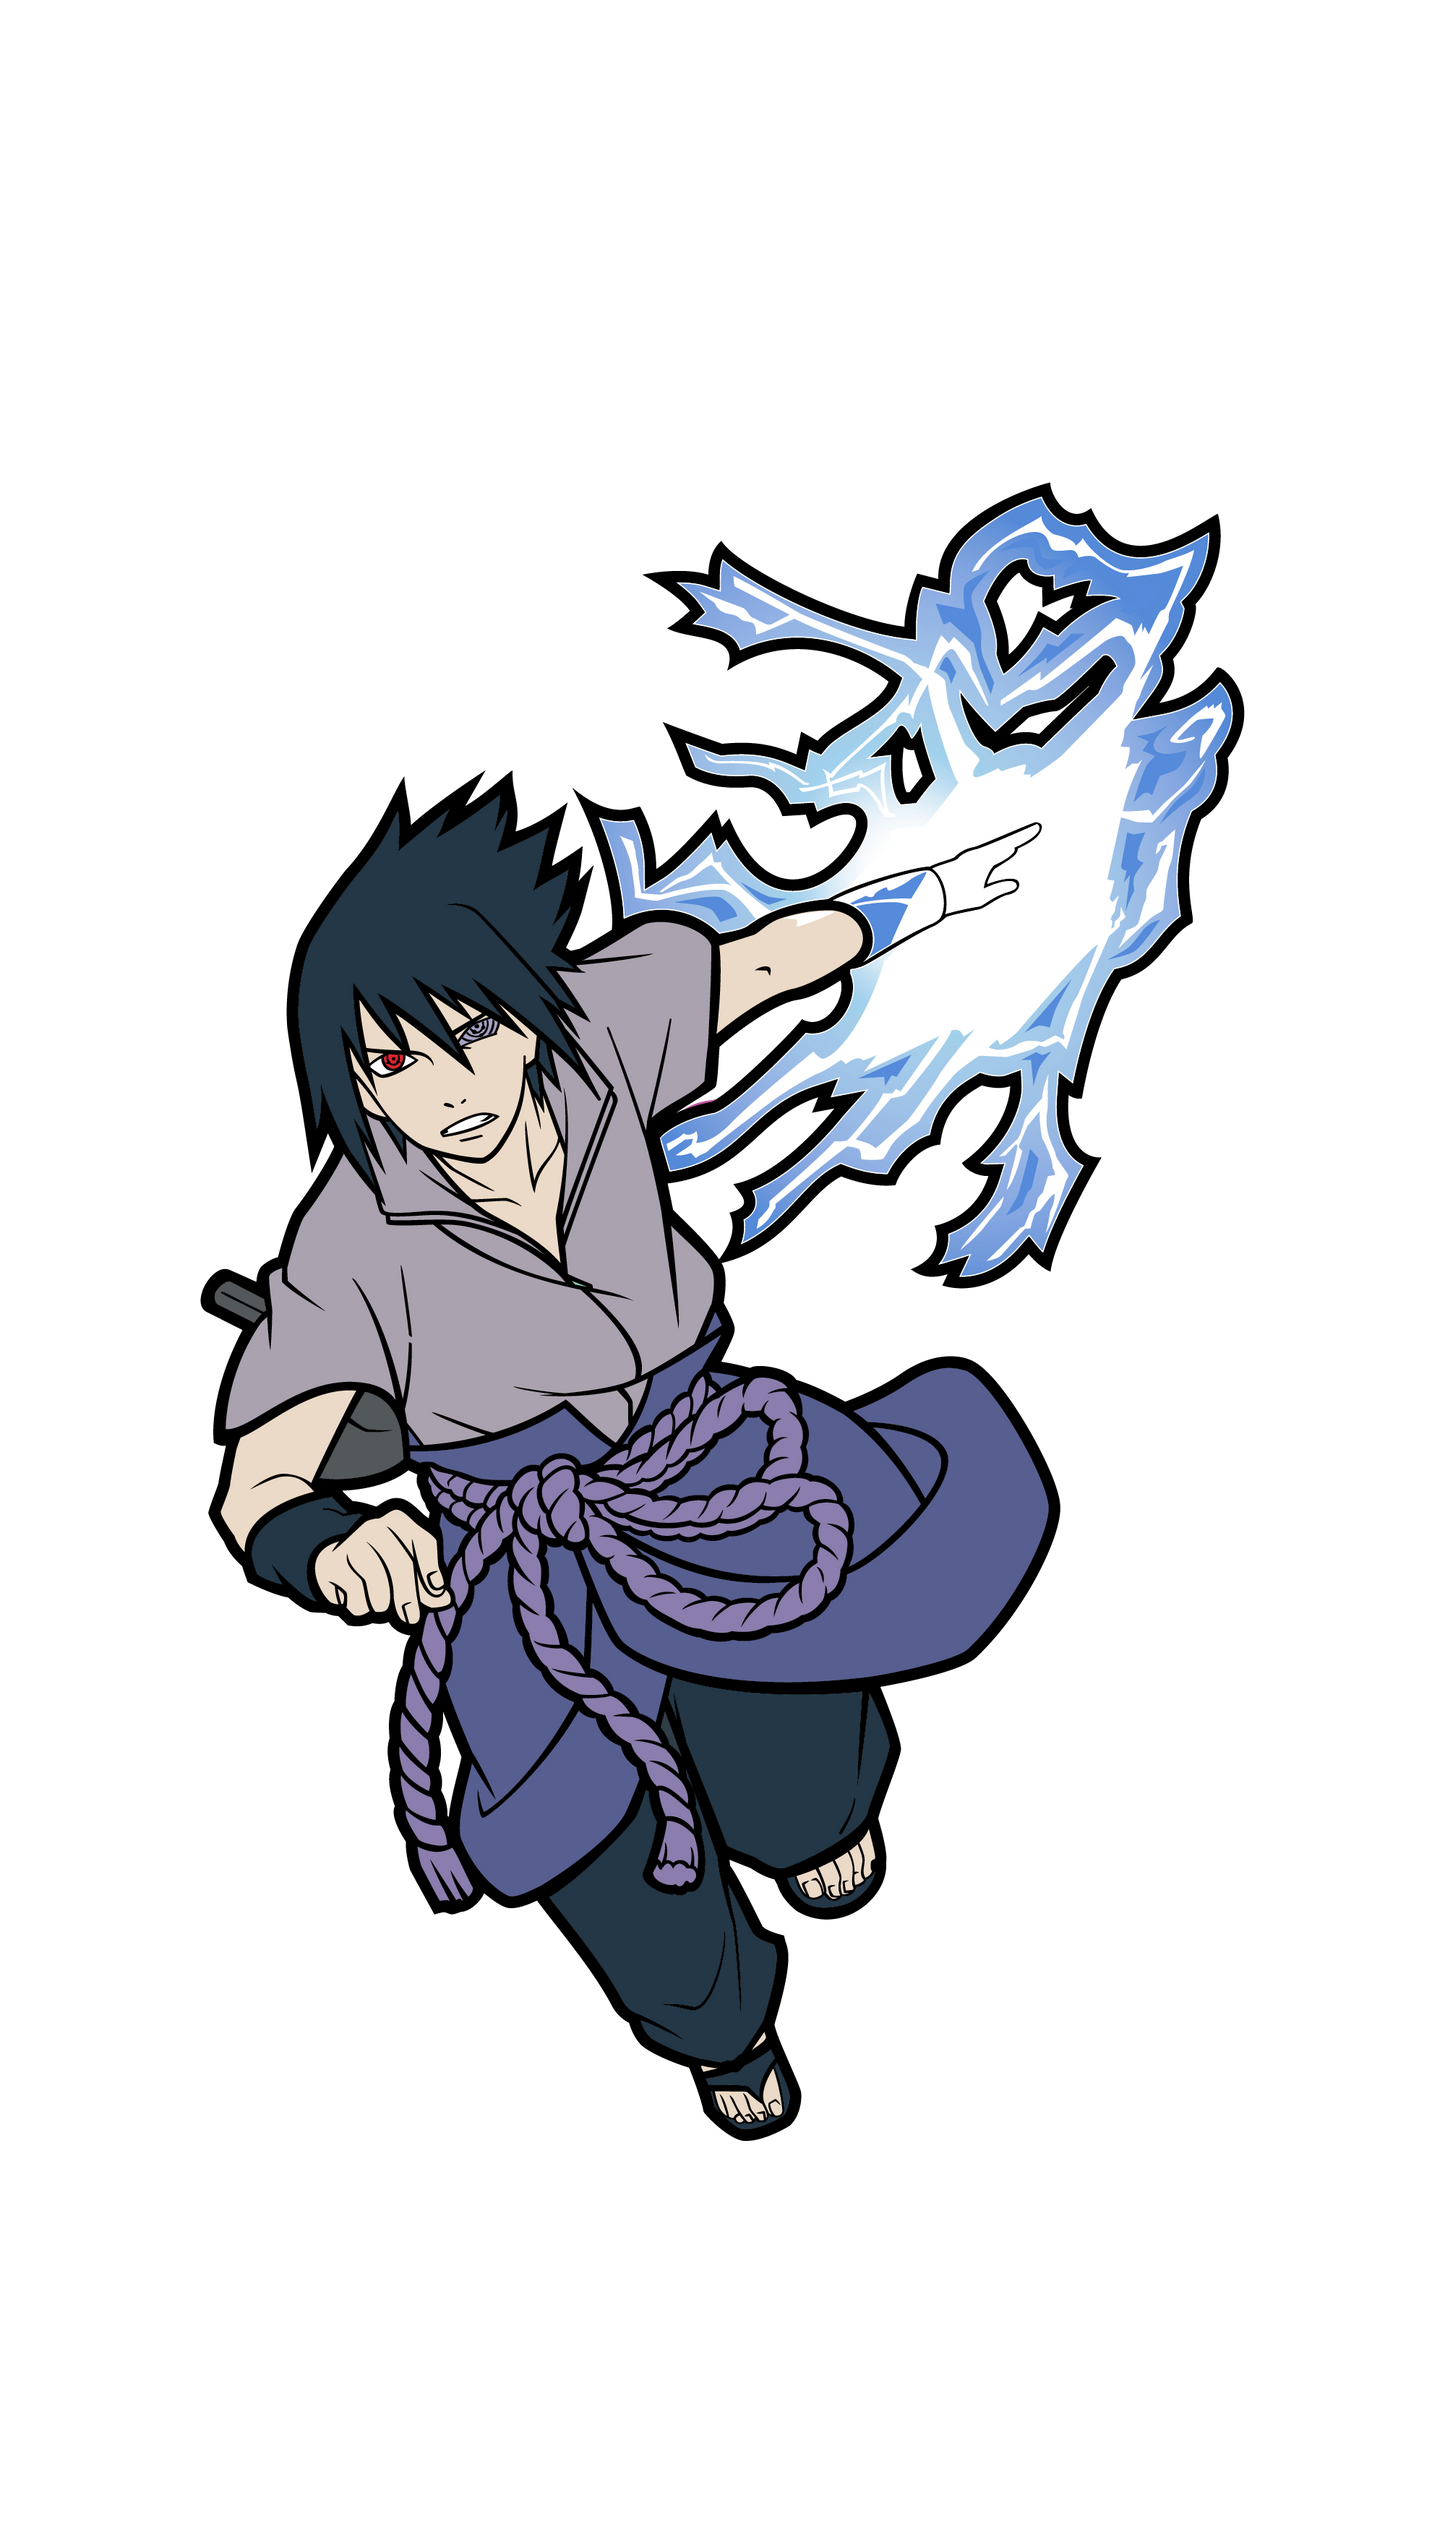 Sasuke #1042 - Naruto Shippuden - FiGPiN